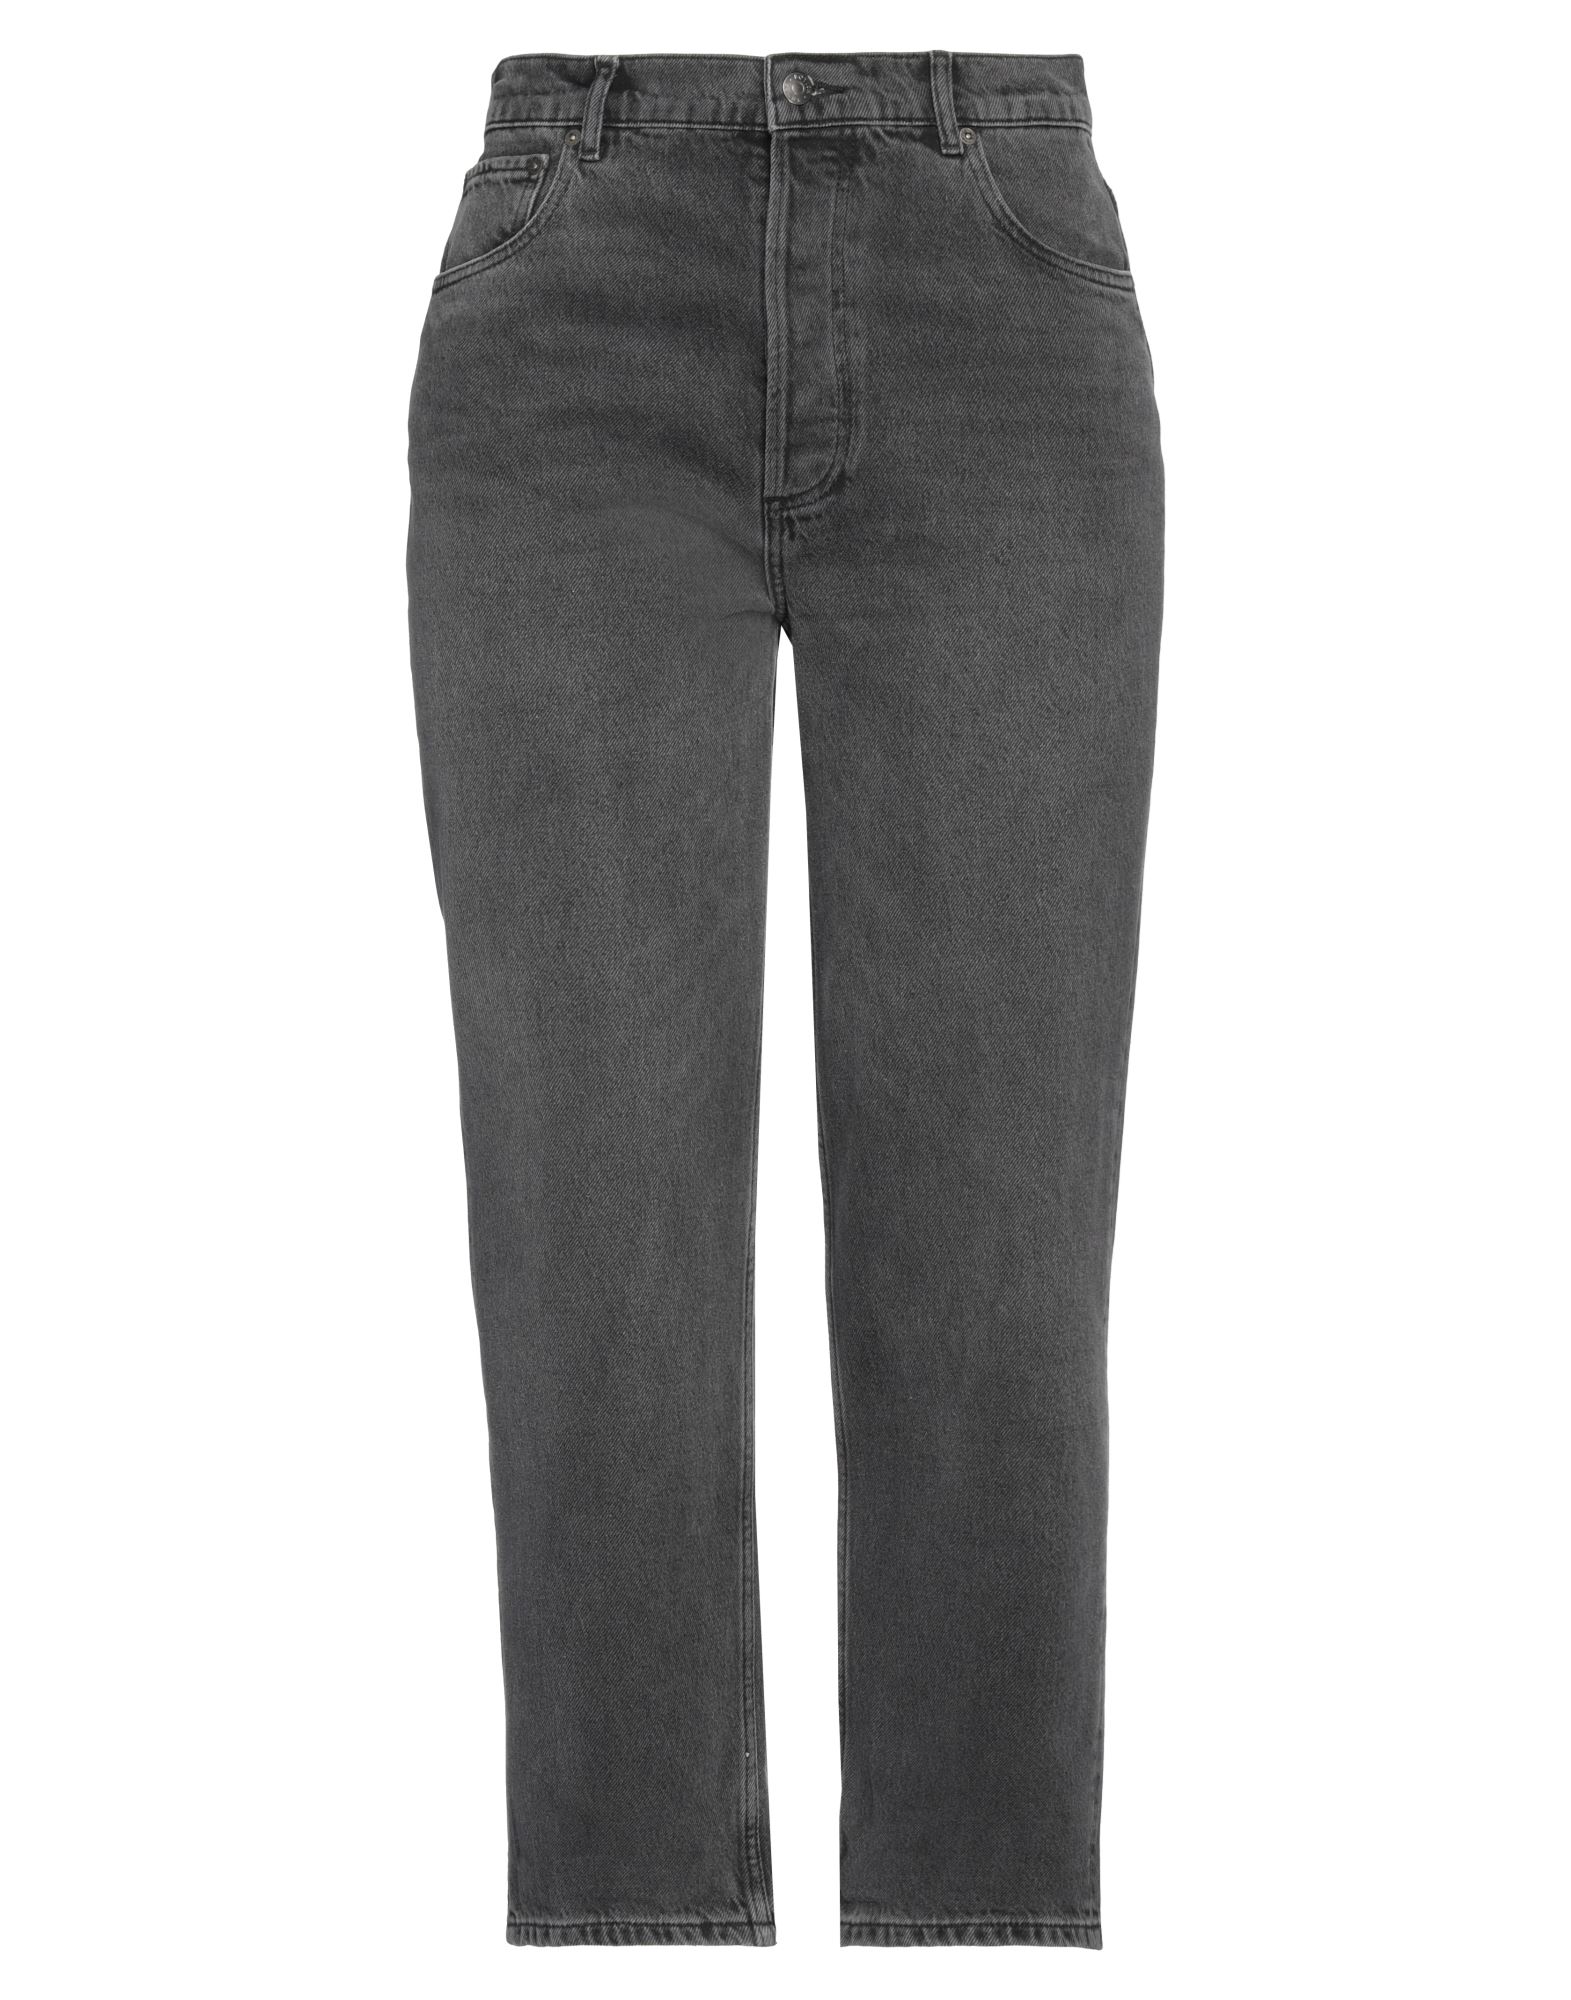 Shop Boyish Woman Jeans Black Size 29 Recycled Cotton, Tencel, Organic Cotton